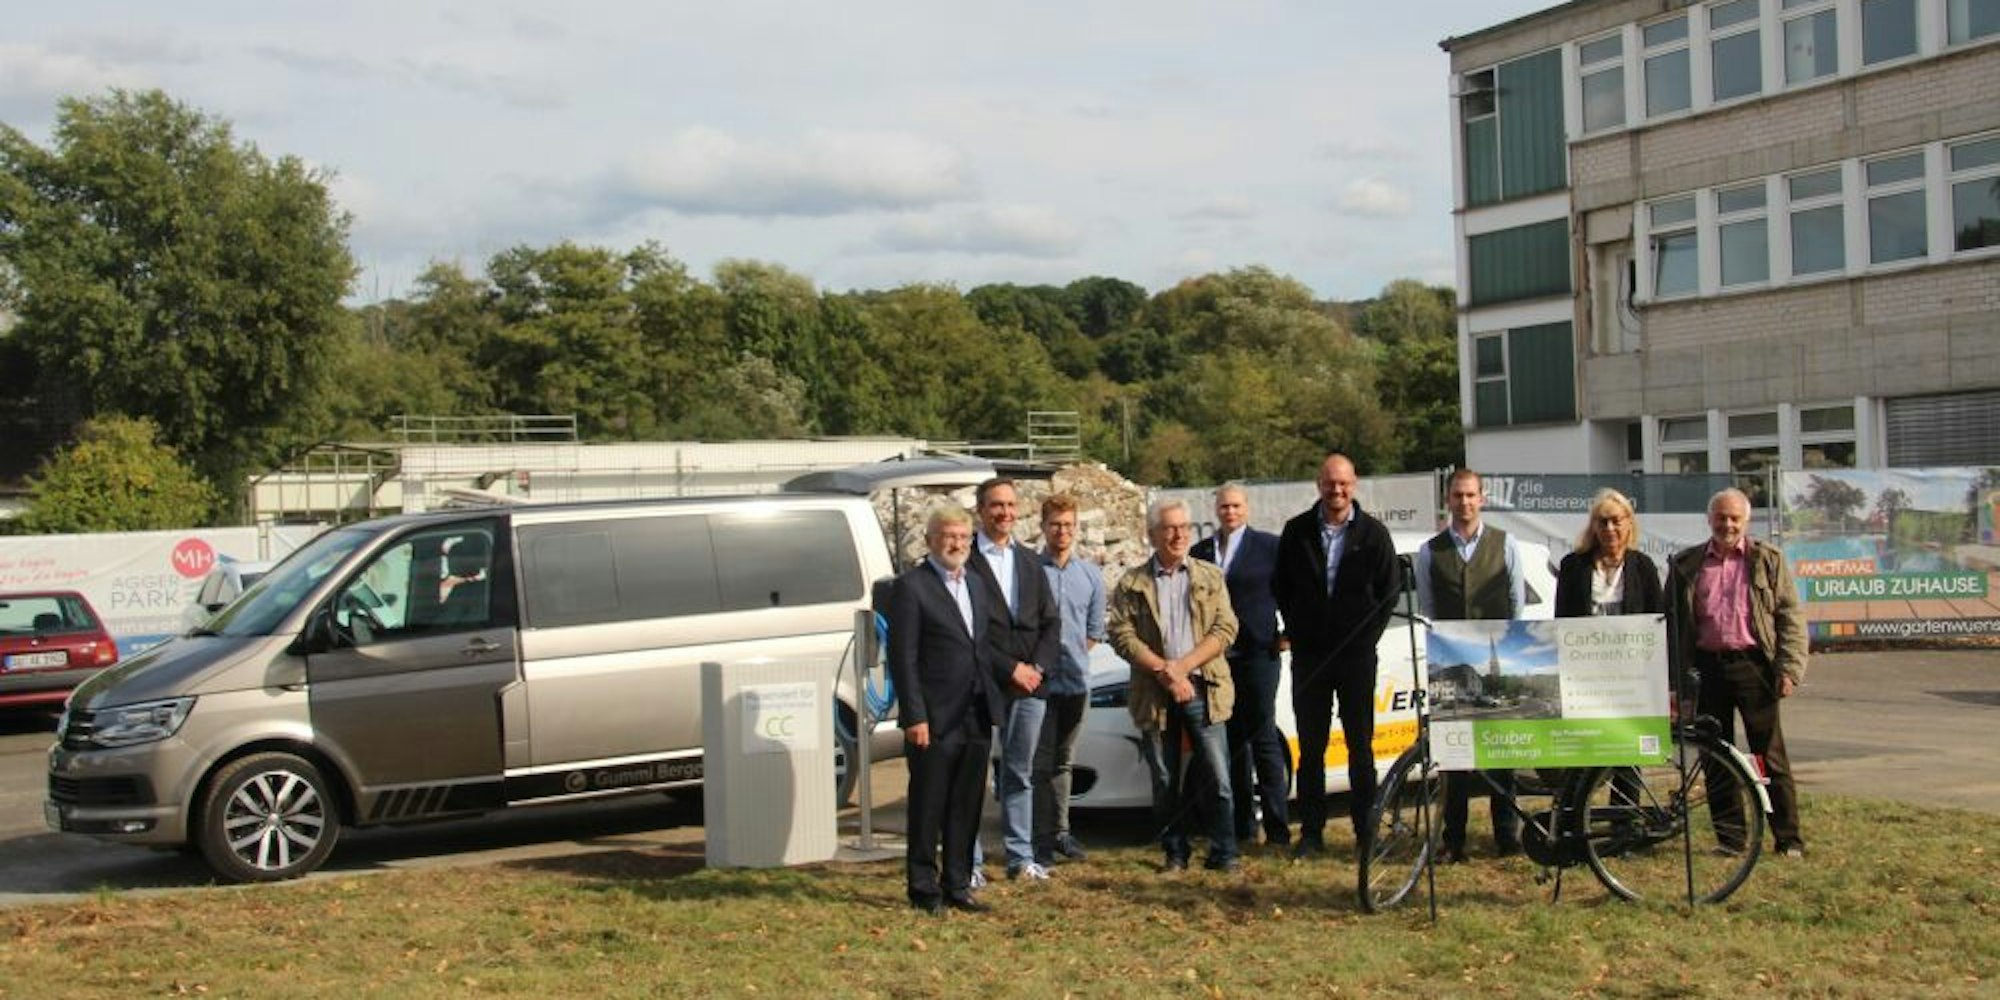 Gruppenbild mit Kleinbus: Die Carsharing-Initiative hat ein neues Fahrzeug und einen neuen Standort direkt hinter dem Bahnhof.